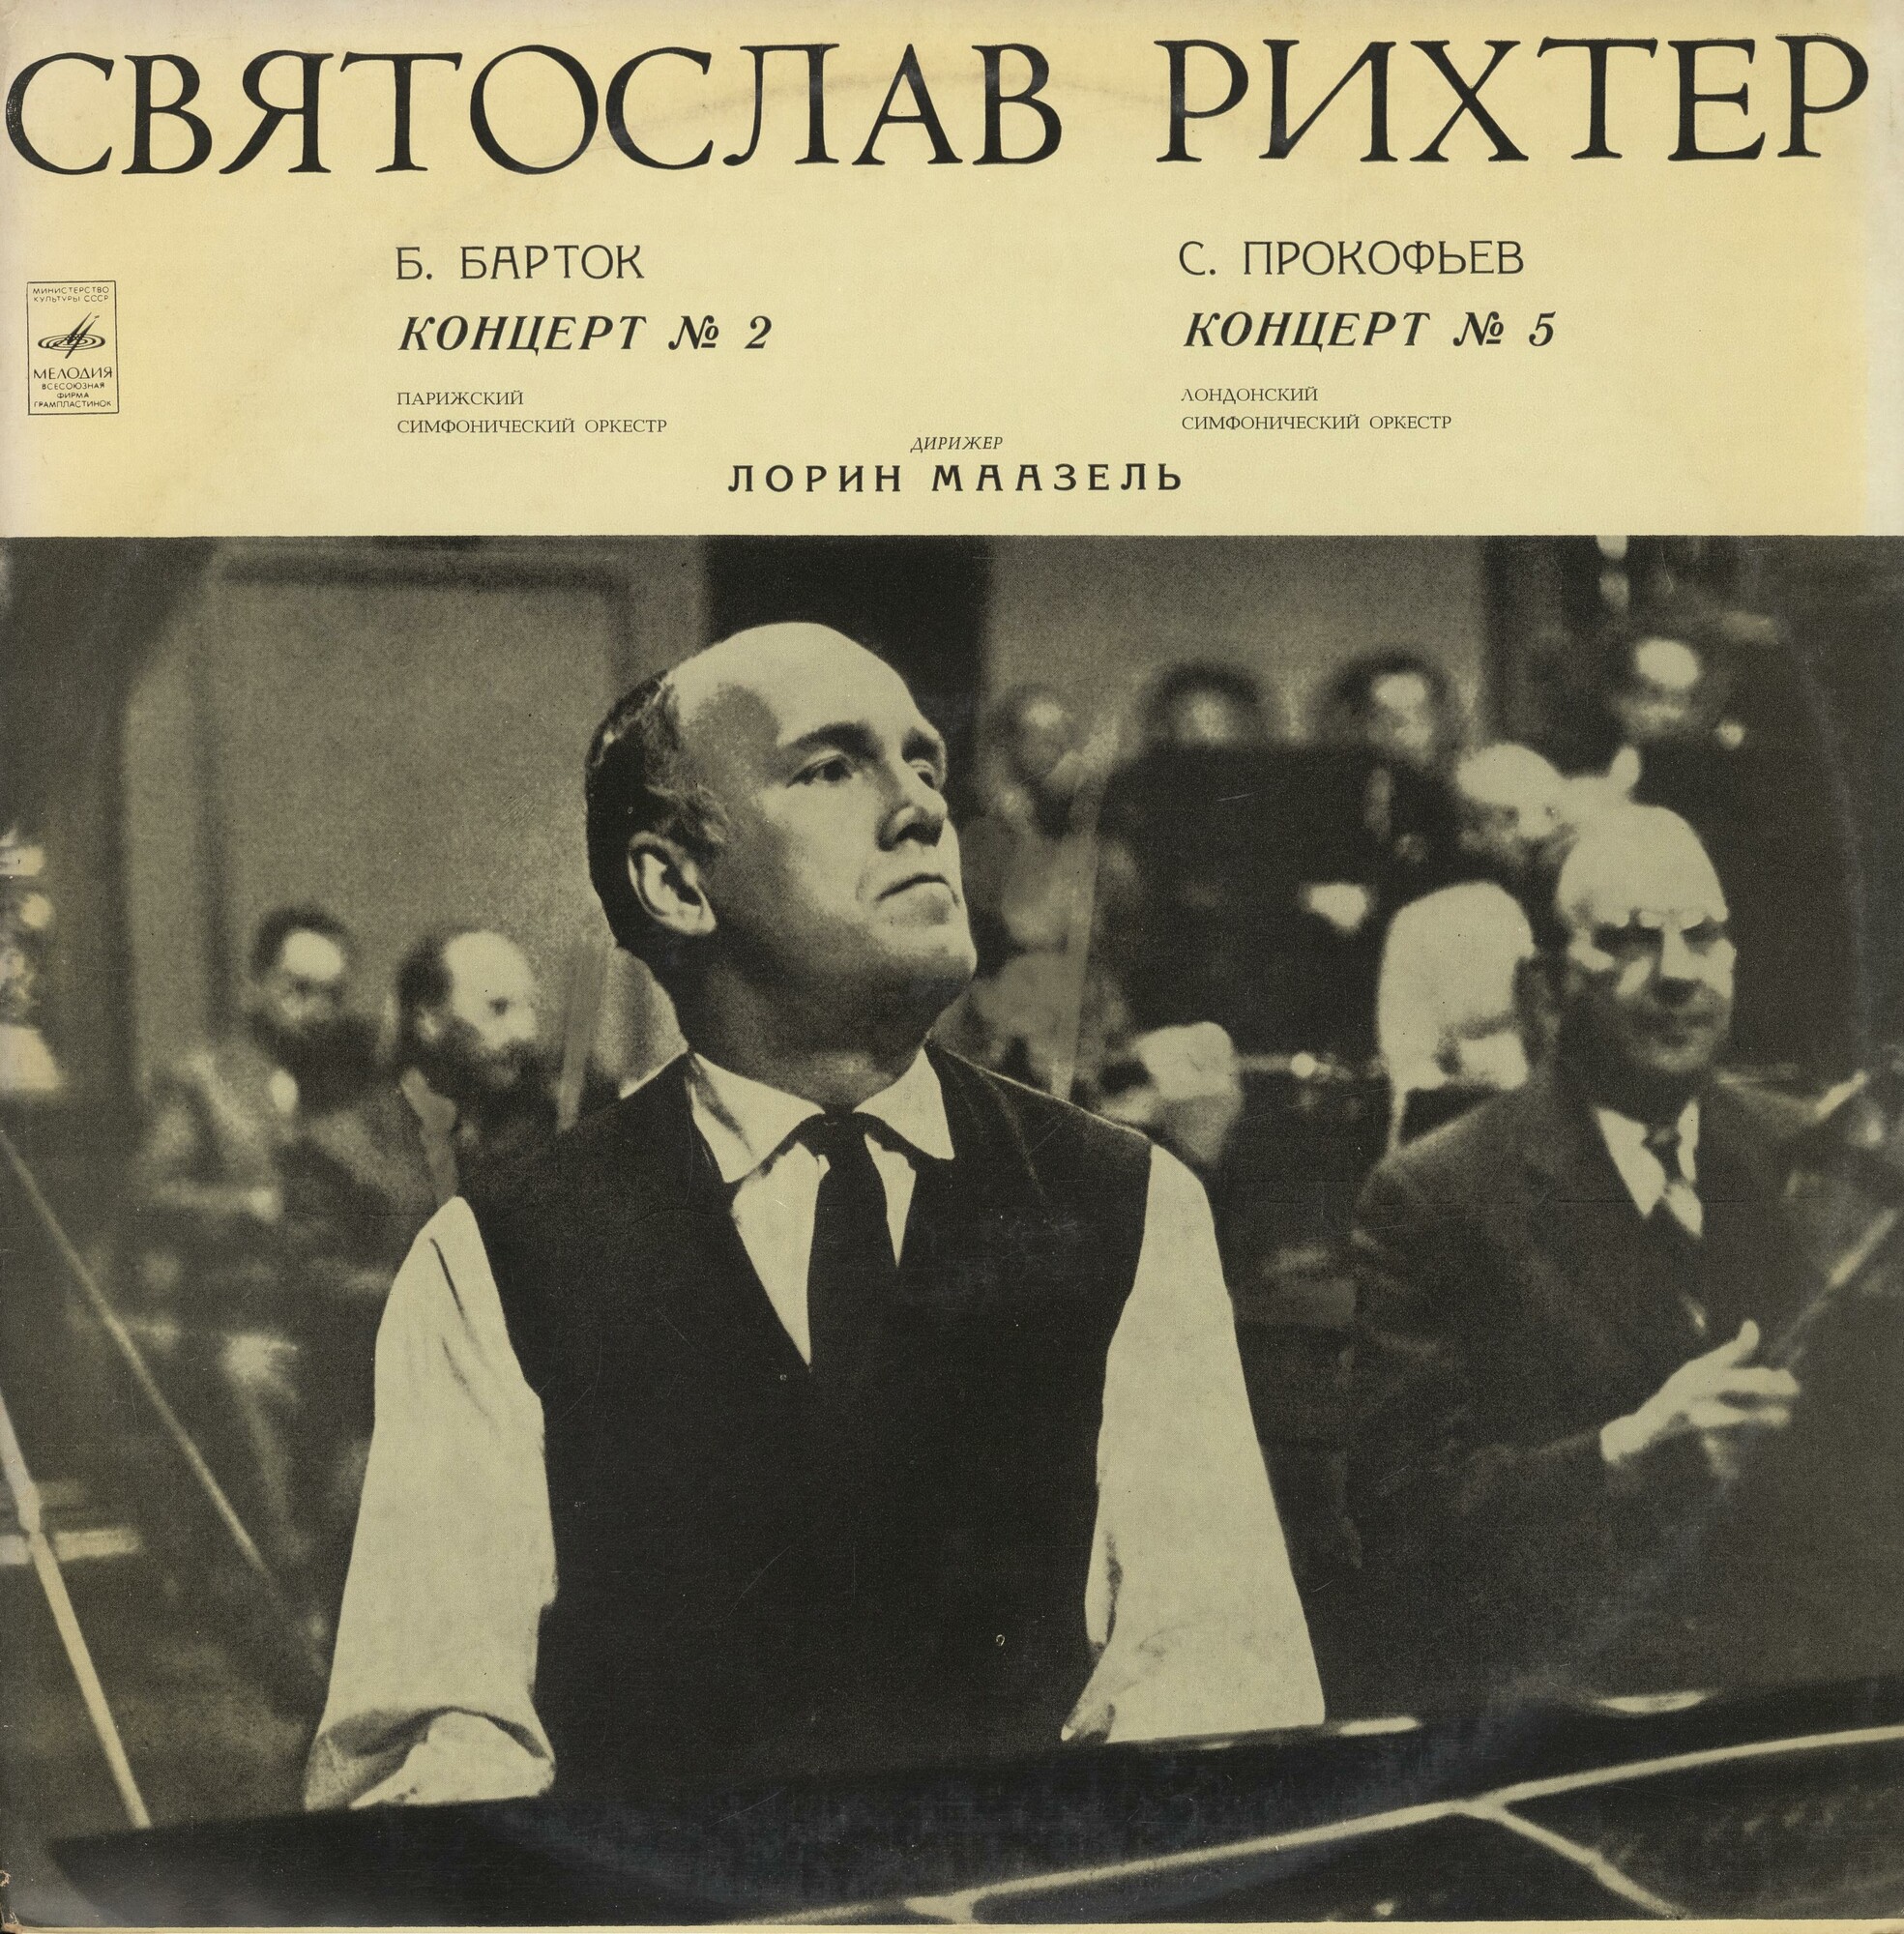 Святослав РИХТЕР (фортепиано)